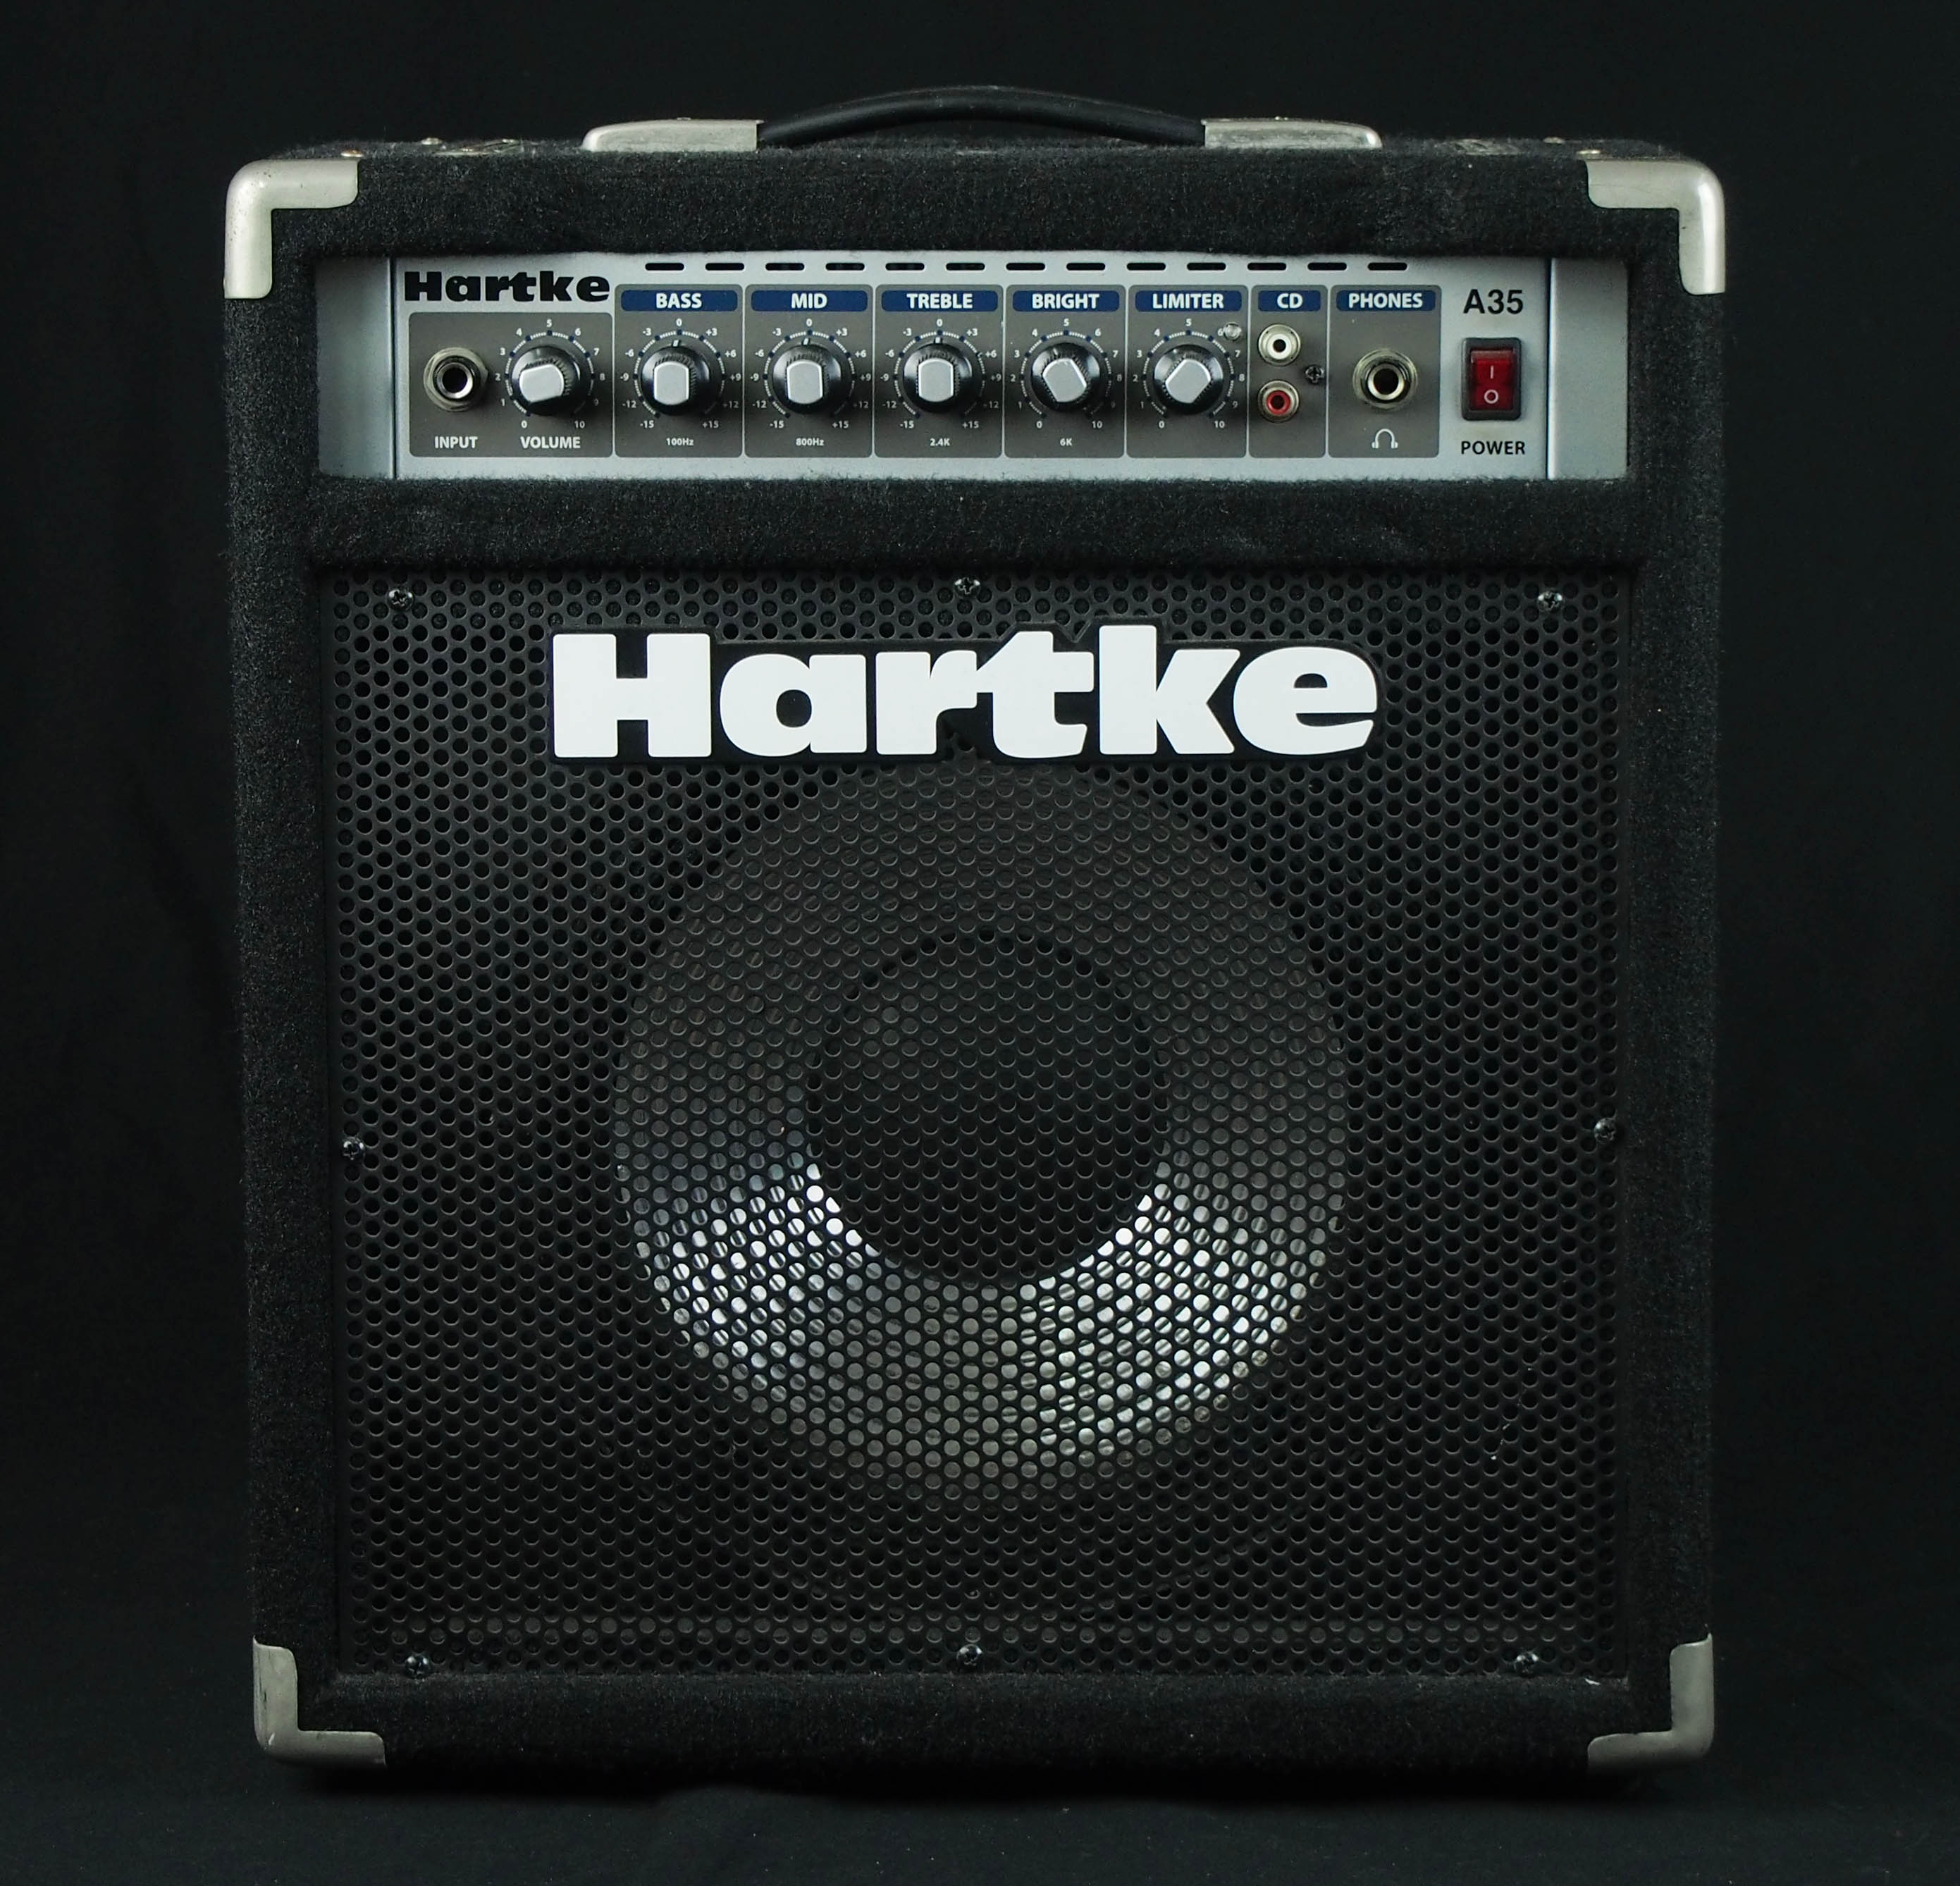 Hartke a35 ベースアンプ